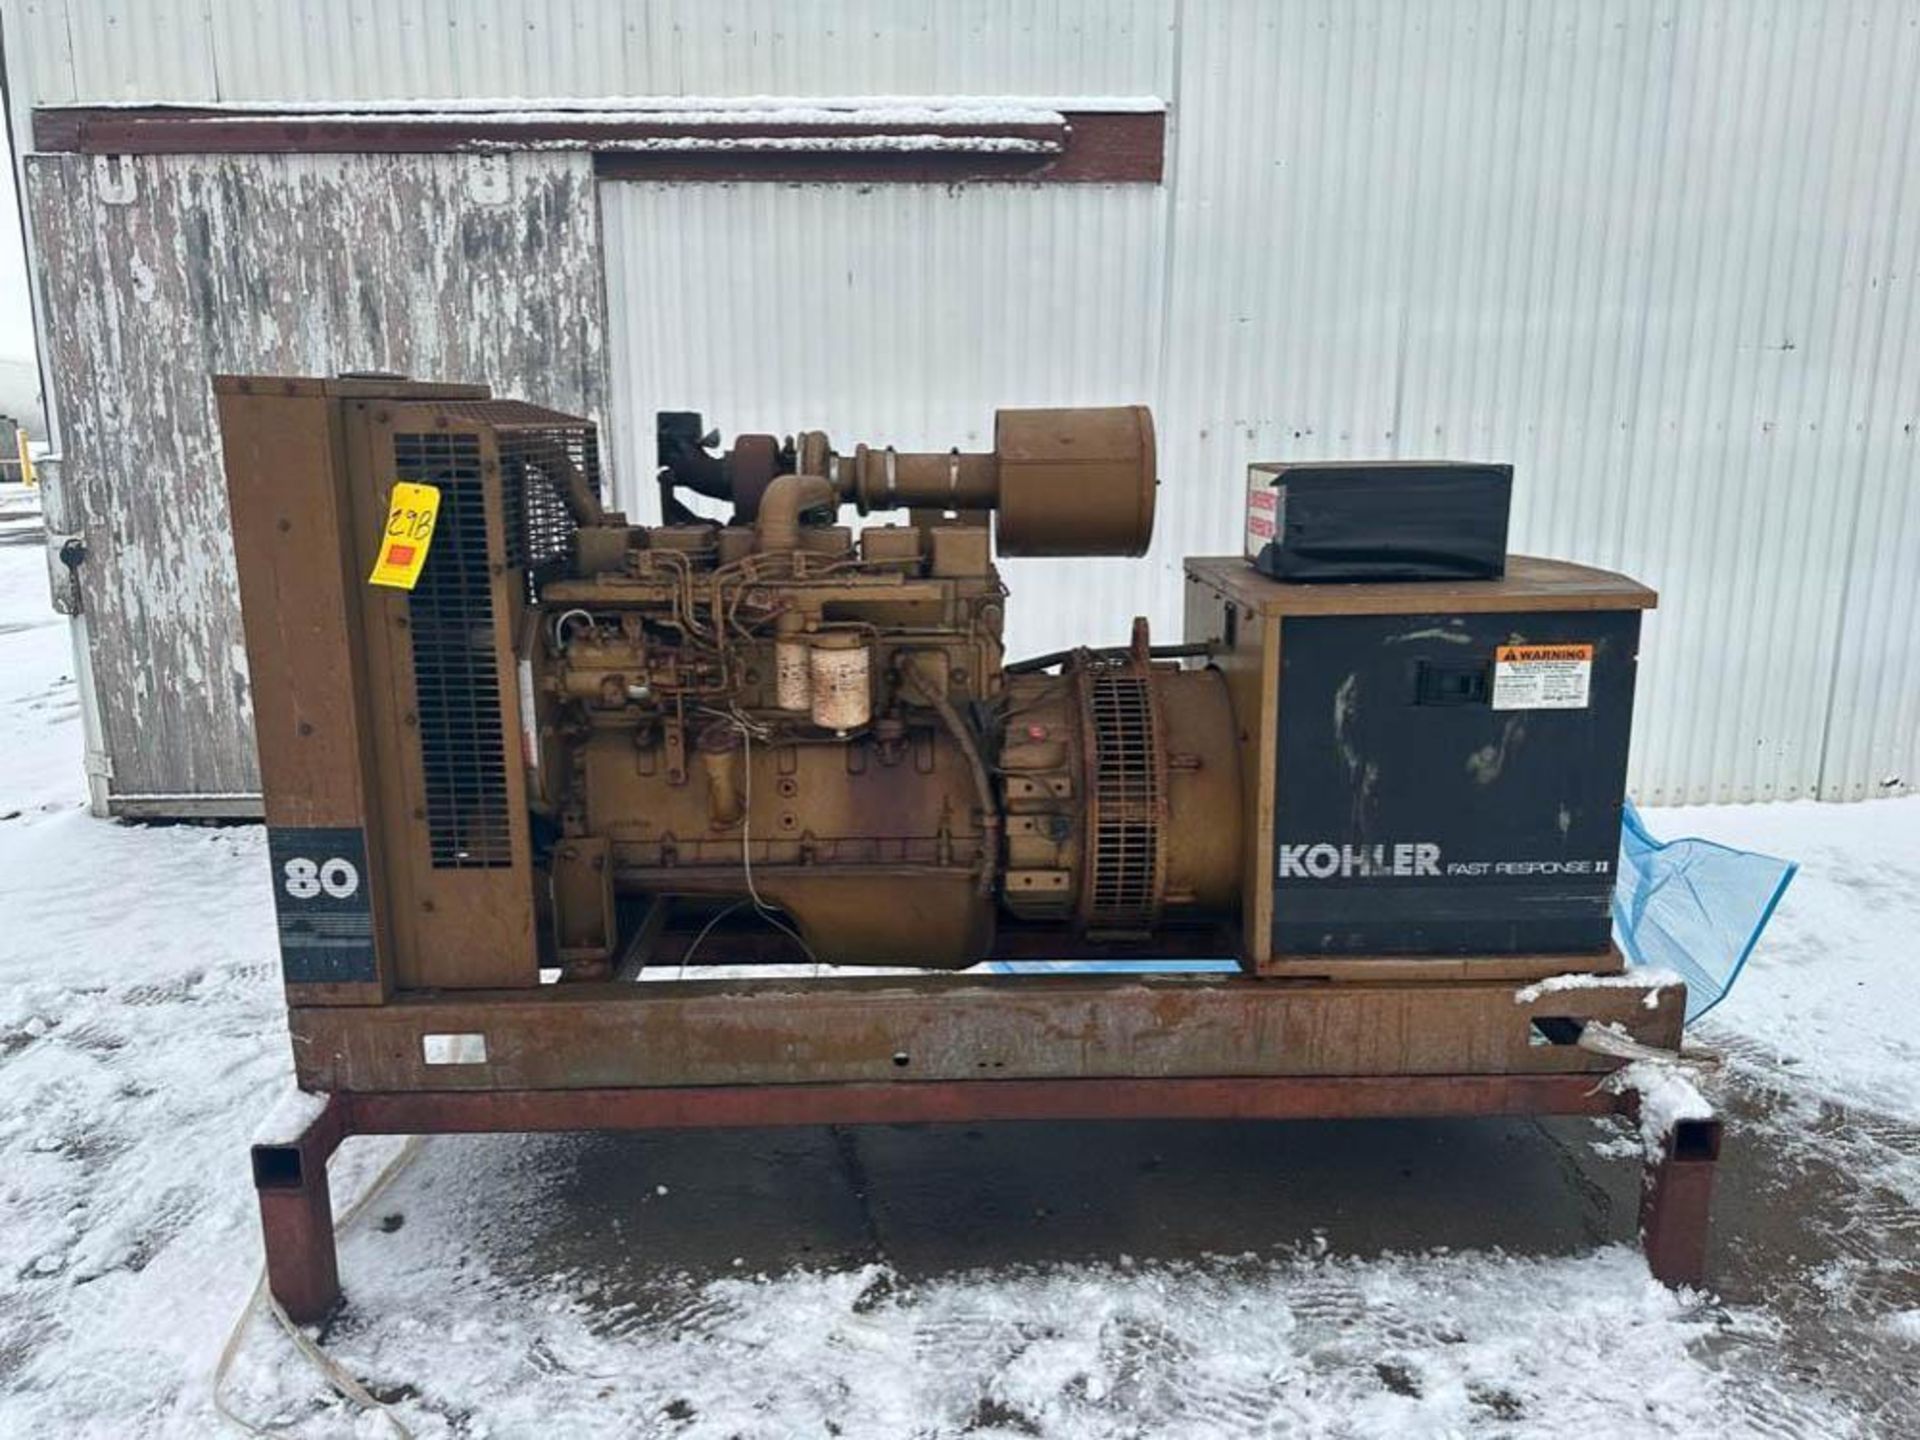 Kohler Fast Response II Emergency Generator, 80 KVA, Diesel - Rigging Fee: $1,000